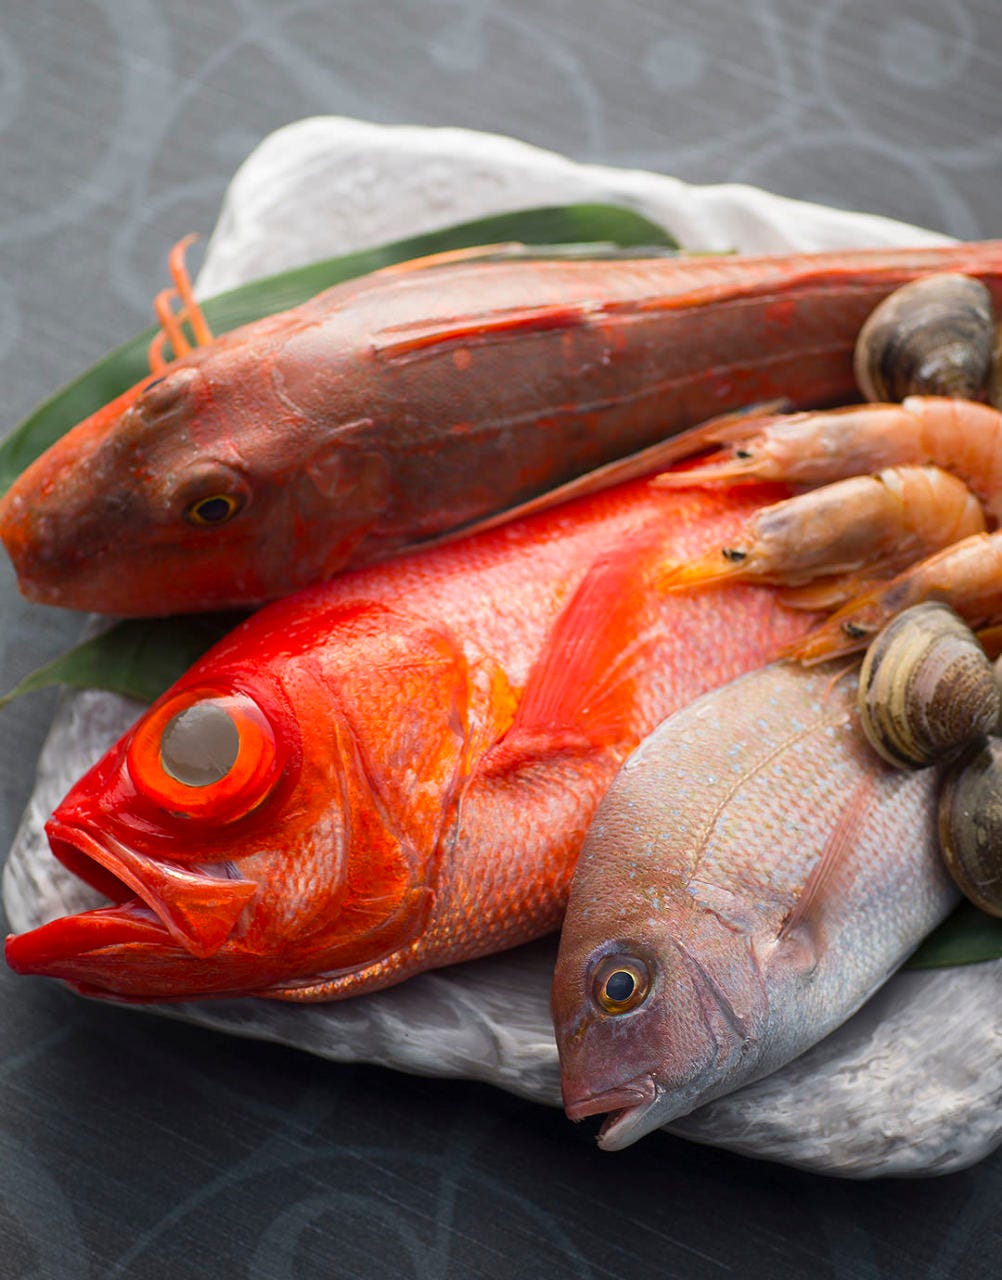 天然魚はシンプルな調理法で
本来の美味しさをお楽しみください